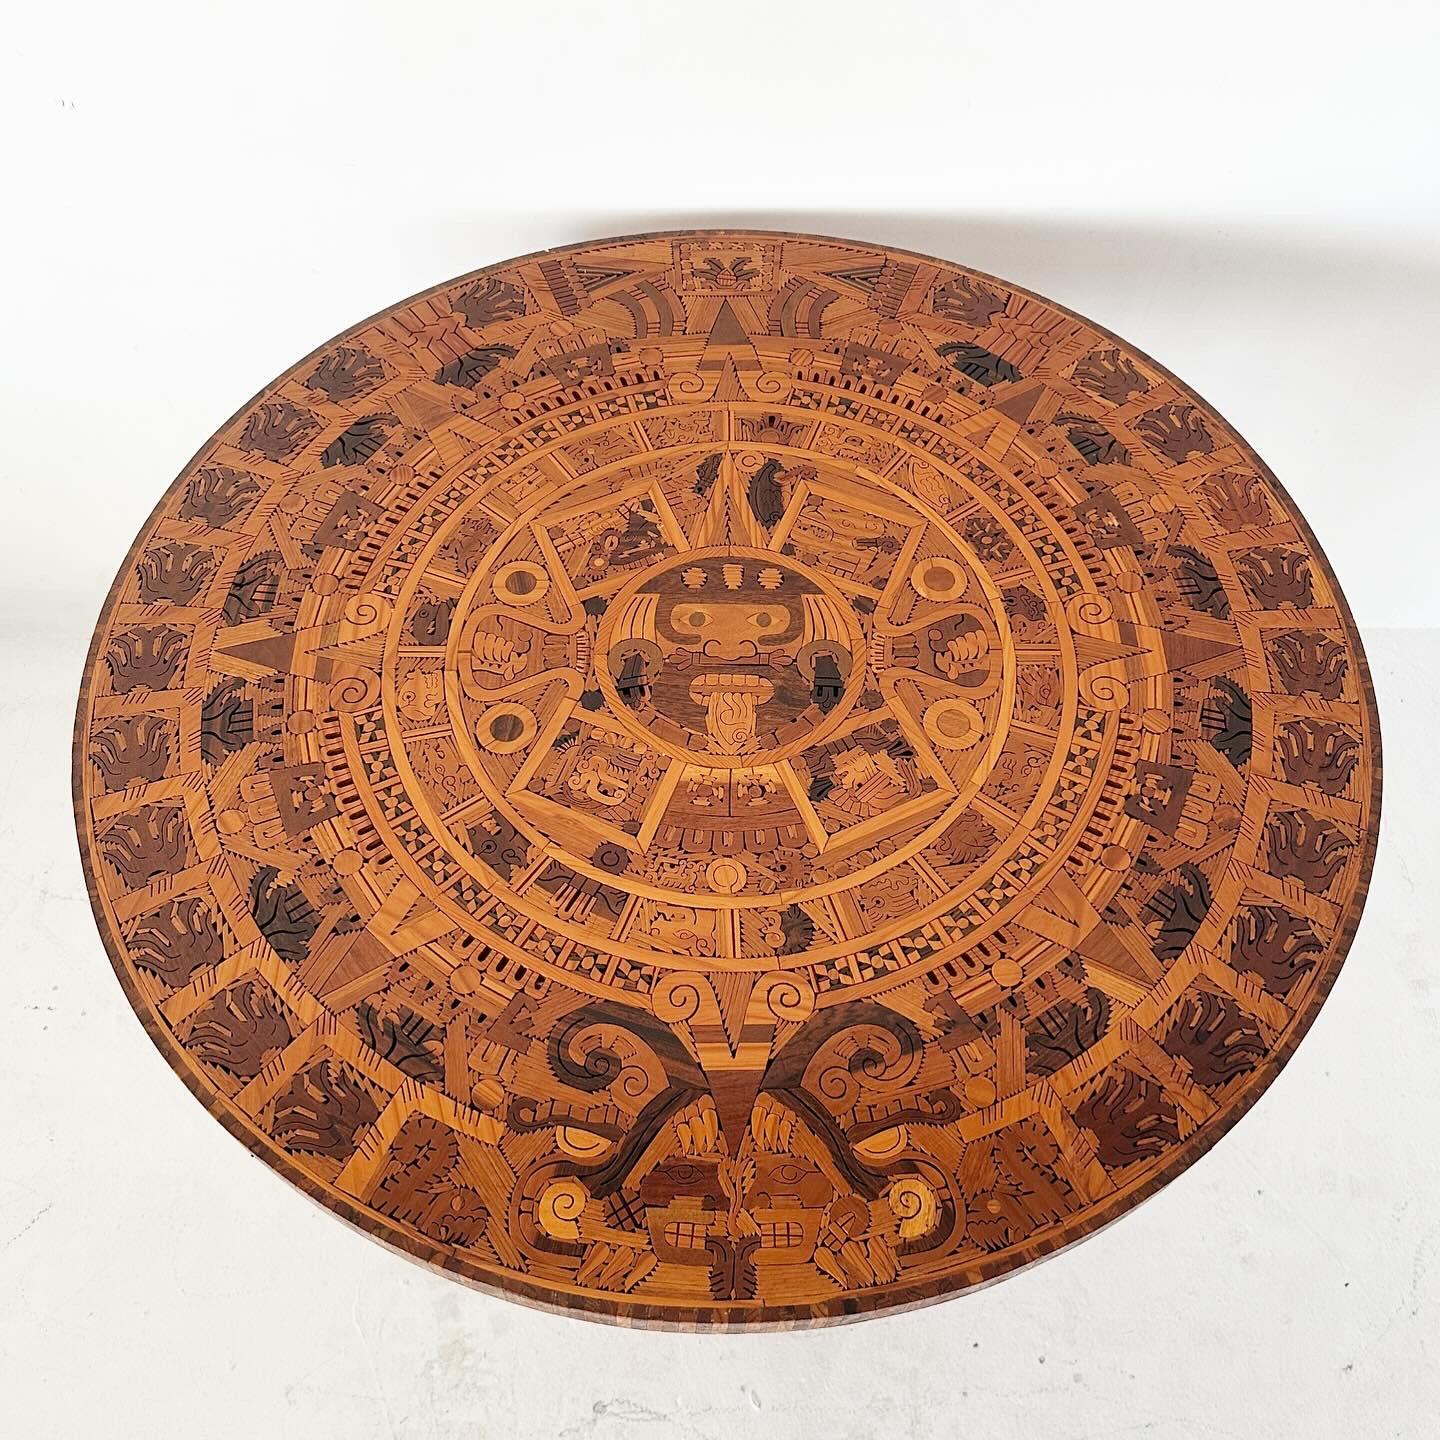 Table de salle à manger ronde en bois incrusté de motifs aztèques, fabriquée à la main. Détails incroyables, bon état vintage. Le plateau circulaire se sépare de la base en bois massif pour faciliter le transport.

H28.5 Diamètre 40.5 (hauteur du